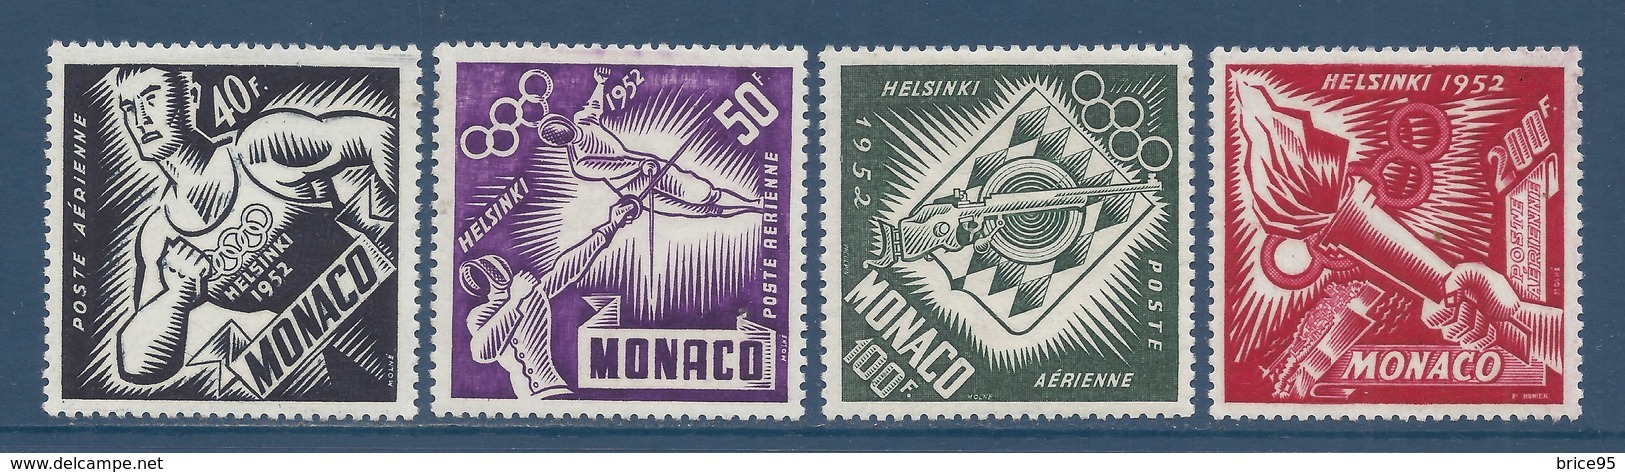 Monaco Poste Aérienne - PA YT N° 51 à 54 - Neuf Sans Charnière - 1953 - Poste Aérienne